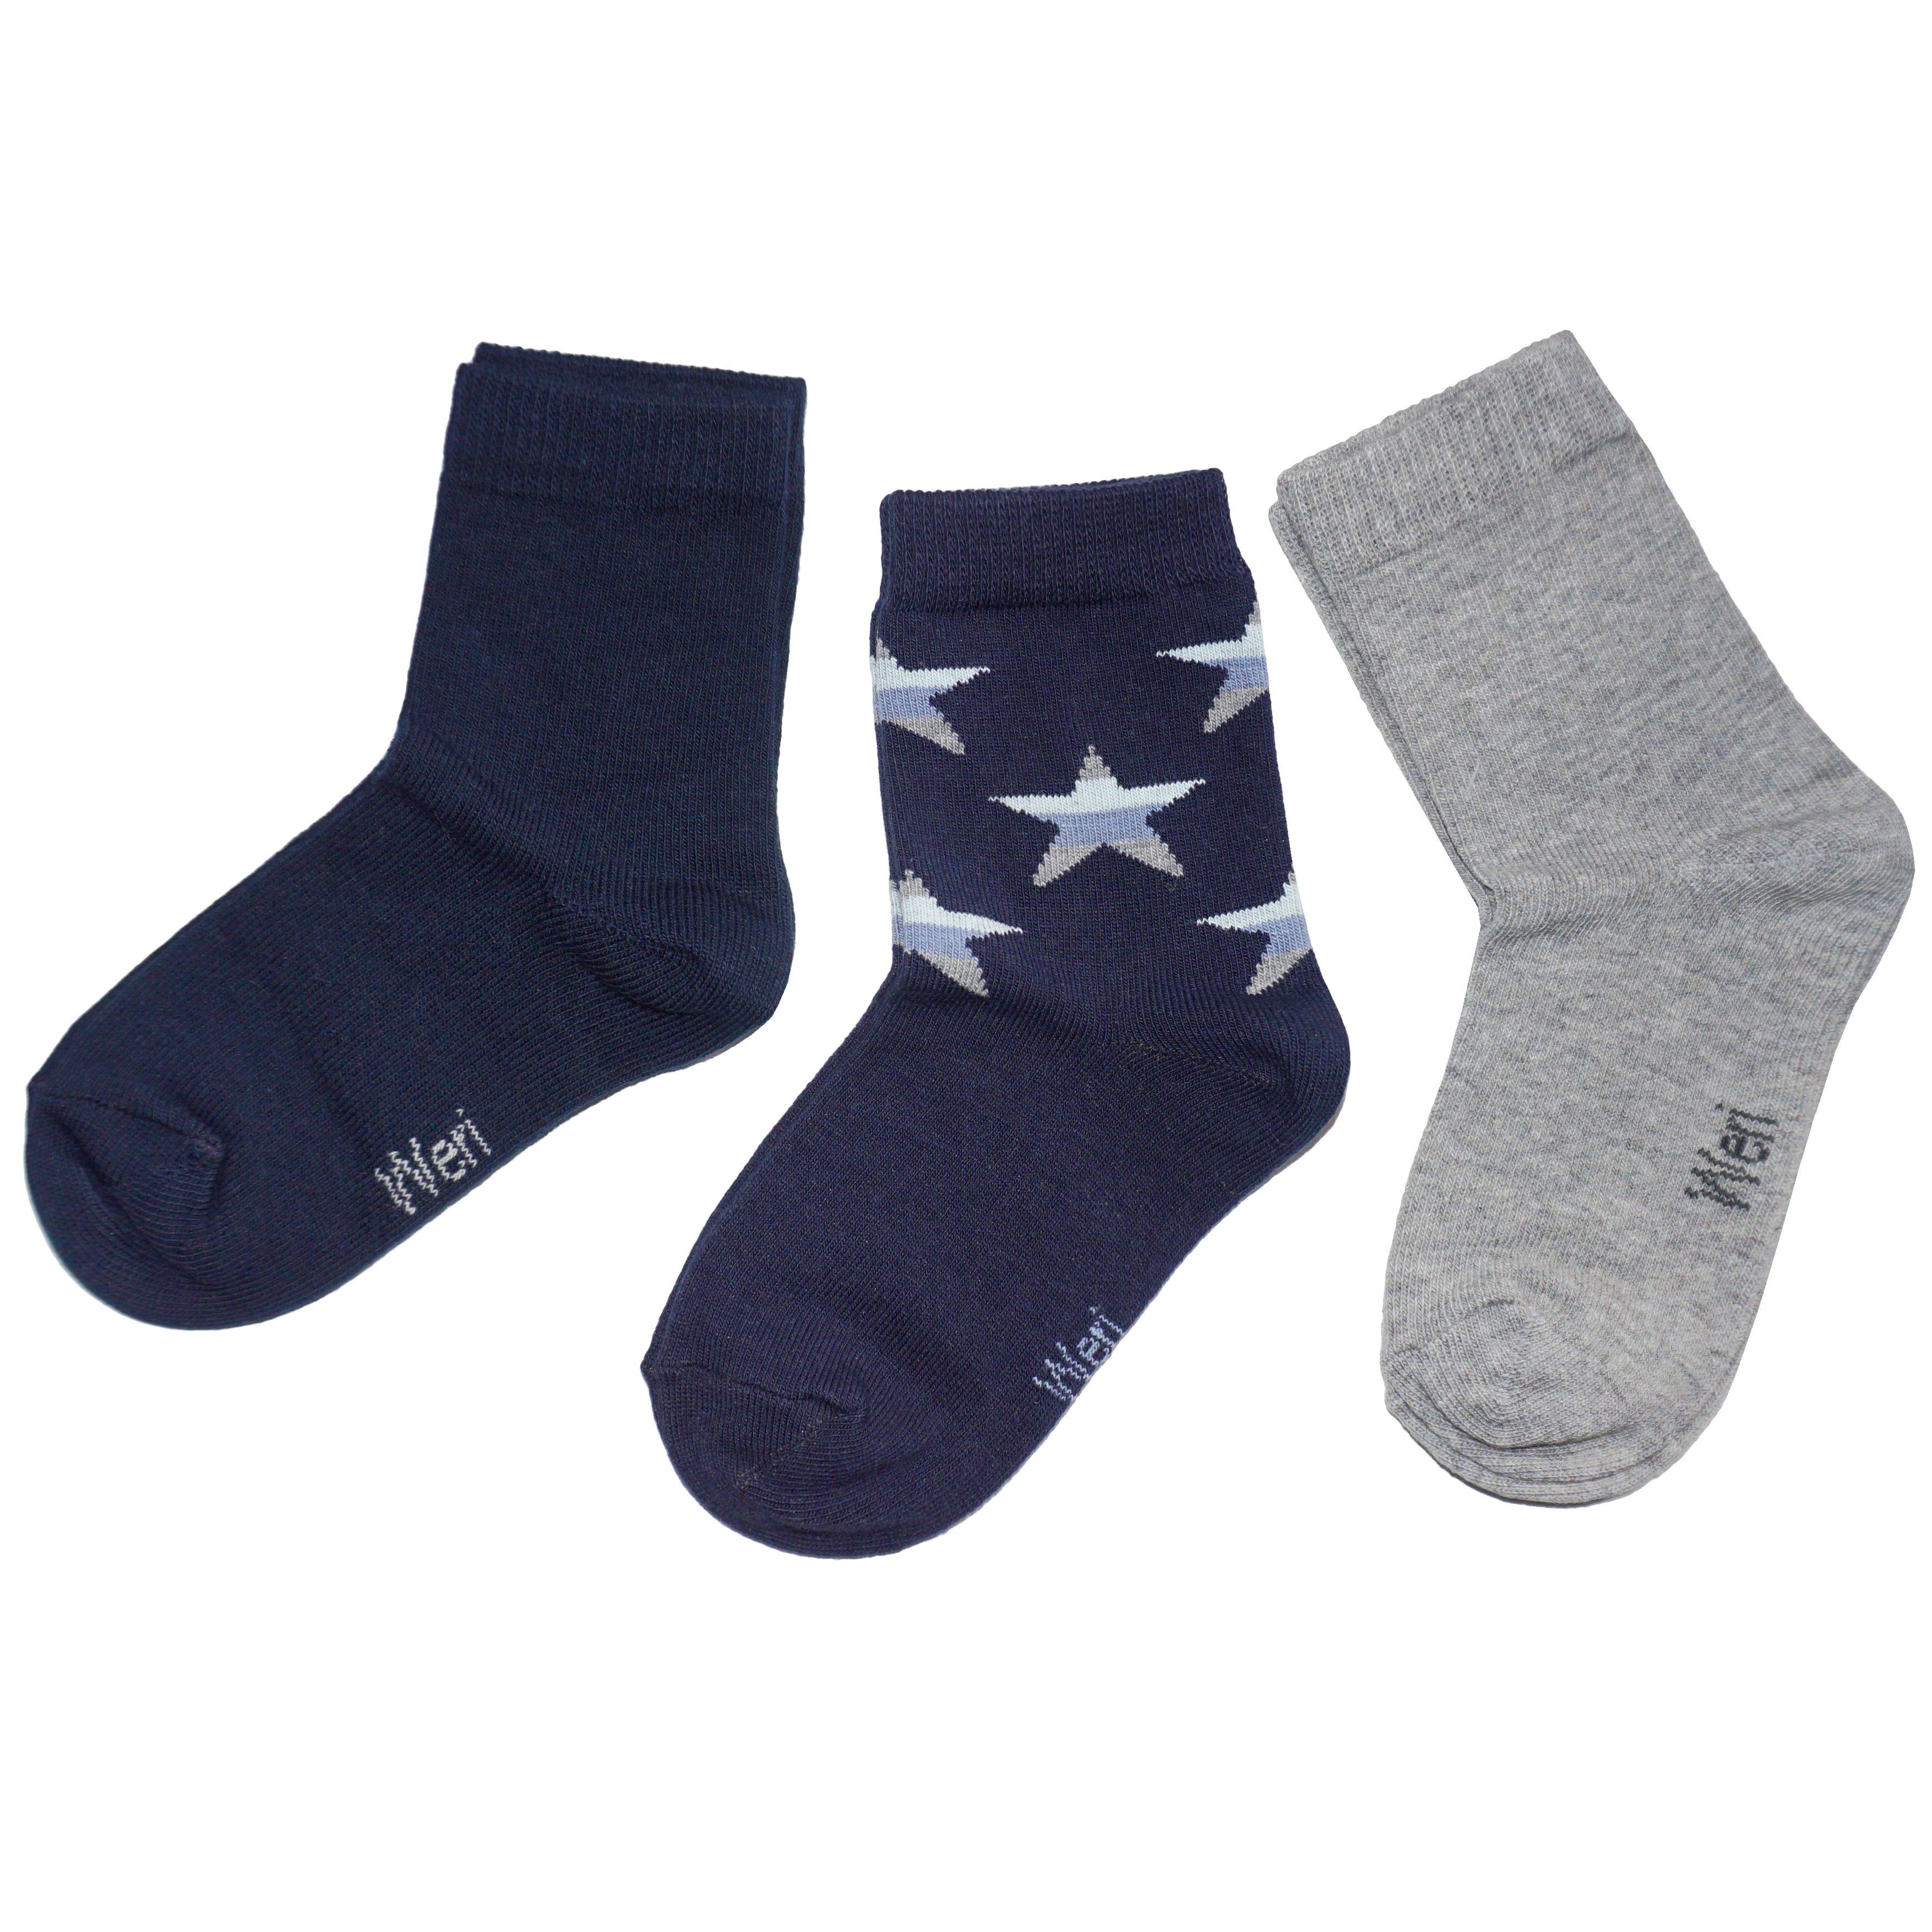 WERI SPEZIALS Strumpfhersteller GmbH Socken Kinder Socken 3-er Pack für Jungs >>Sterne<< aus Baumwollle (Set) 3er-Pack